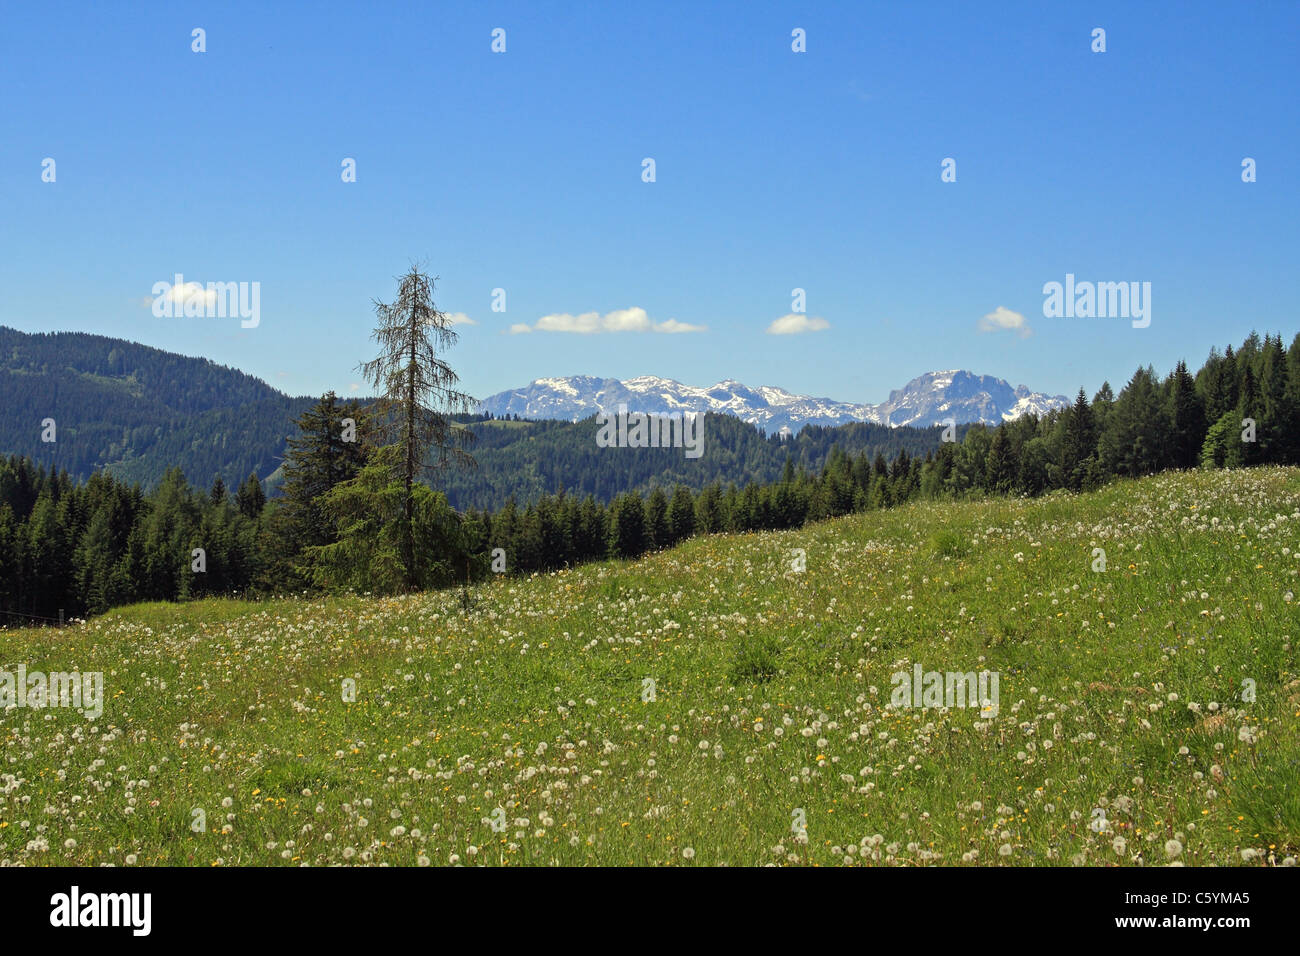 Pré alpin et point de vue sur les lointaines montagnes des Dolomites. Carinthie (Kärnten, Autriche) Banque D'Images